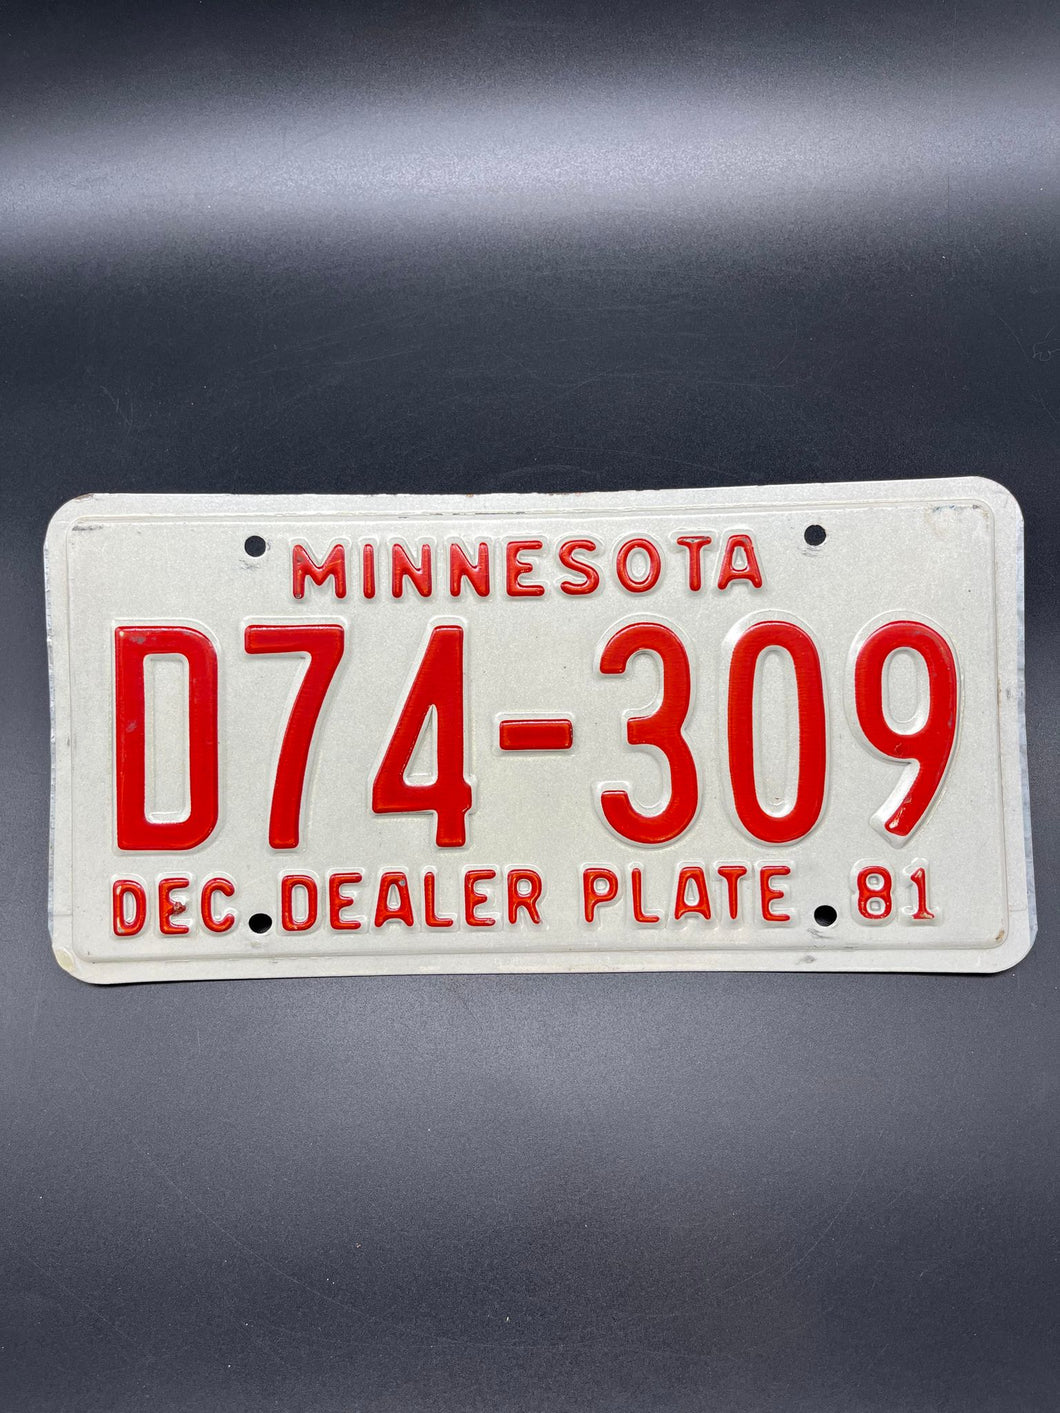 Minnesota Dealer Plate - D74 - 309